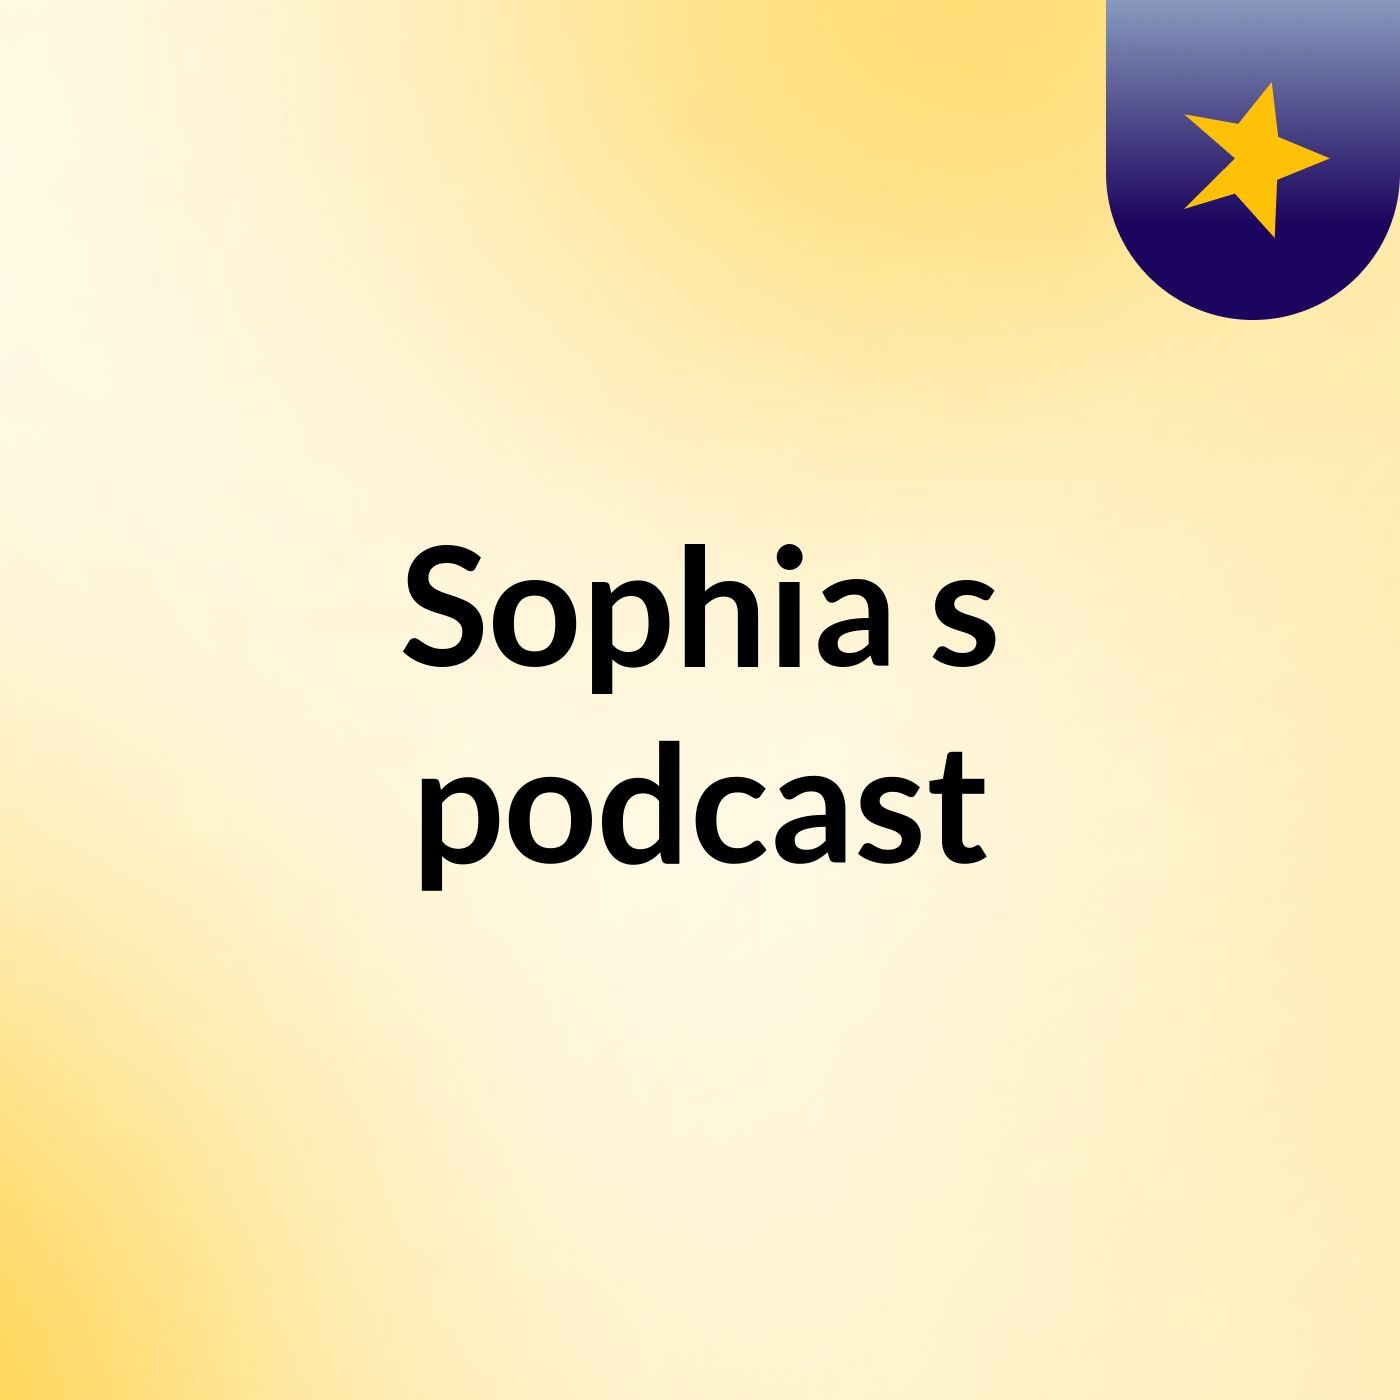 Episode 4 - Sophia's podcast